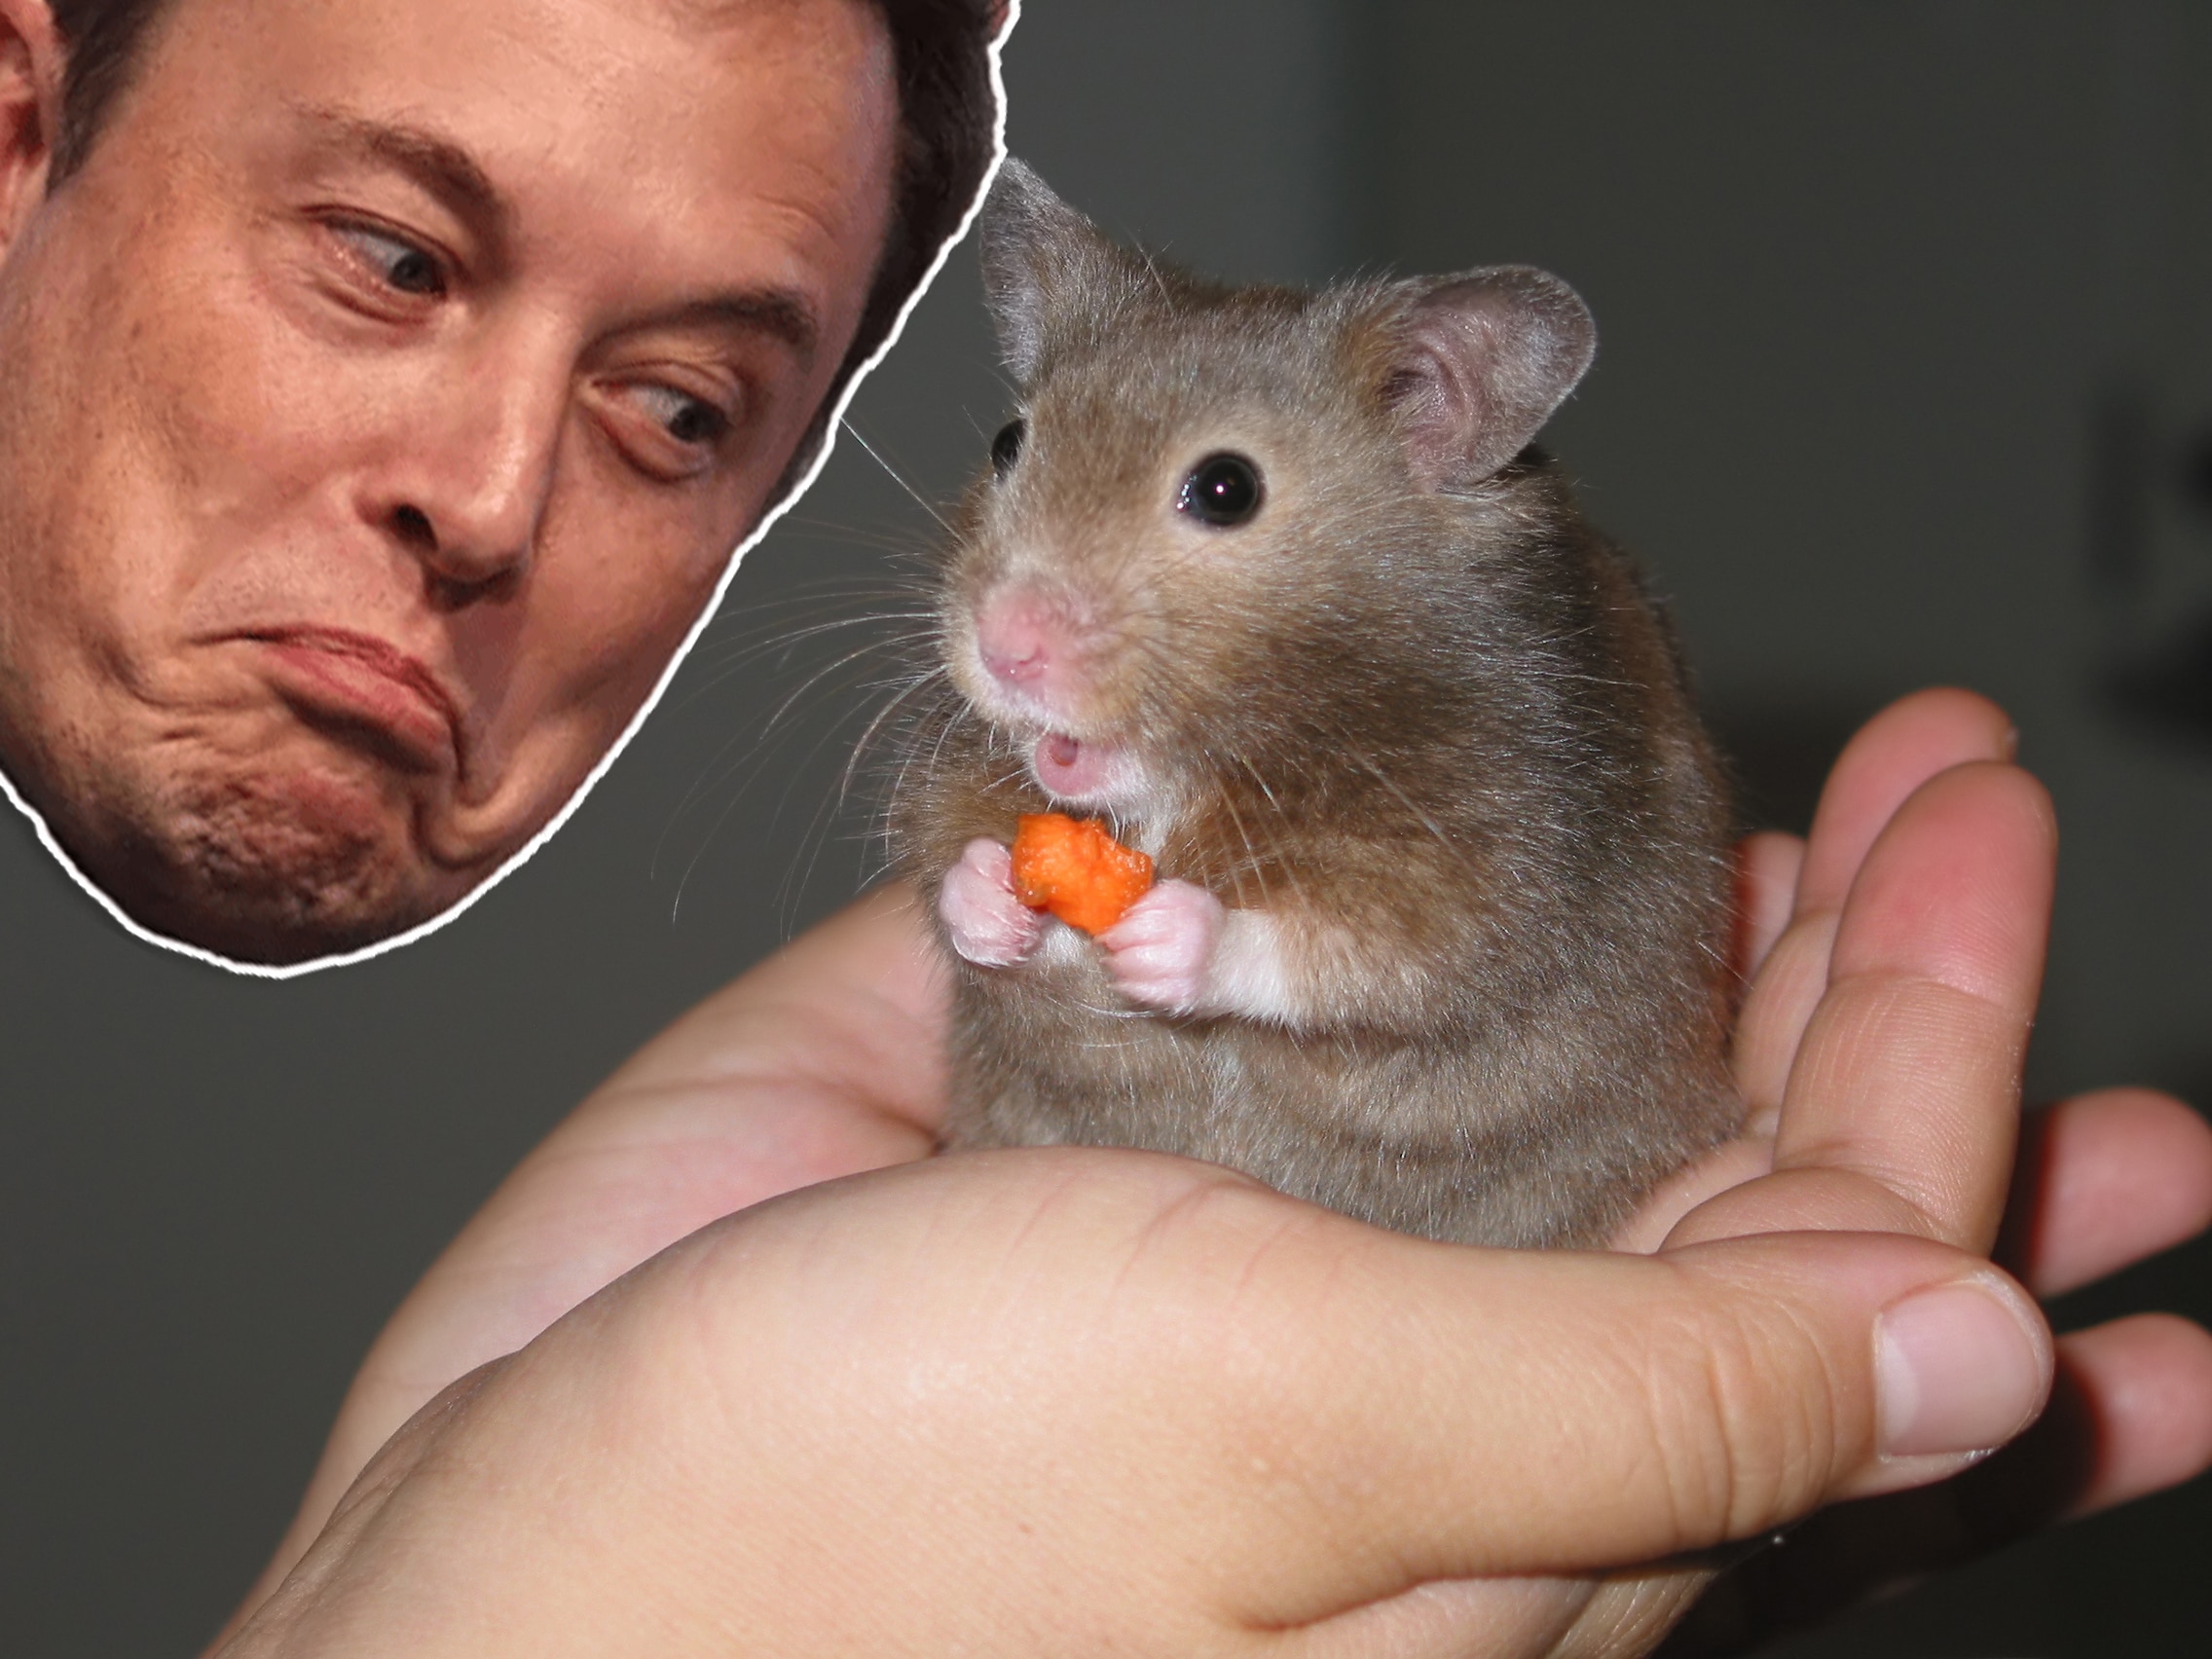 Novo “Pet” favorito? Elon Musk elogia Hamster que faz trading